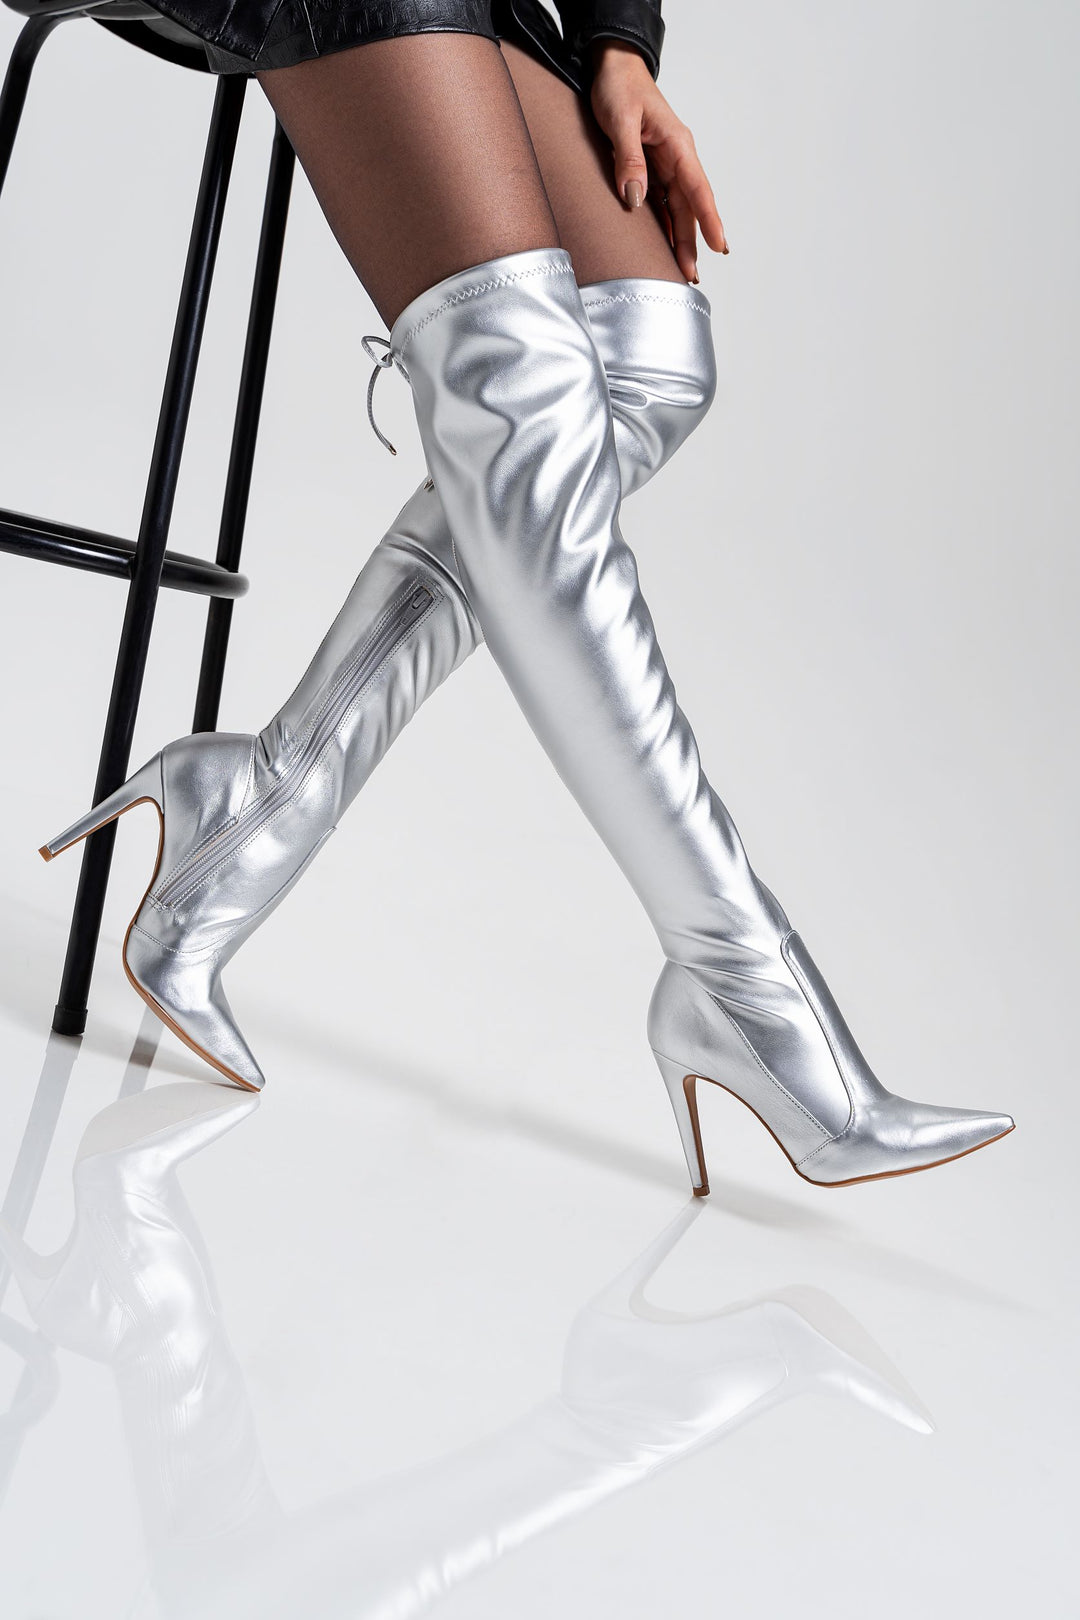 Silberne STARLIGHT Overknees Legging-Stiefel mit Schnürung zur Weitenregulierung am Oberschenkel